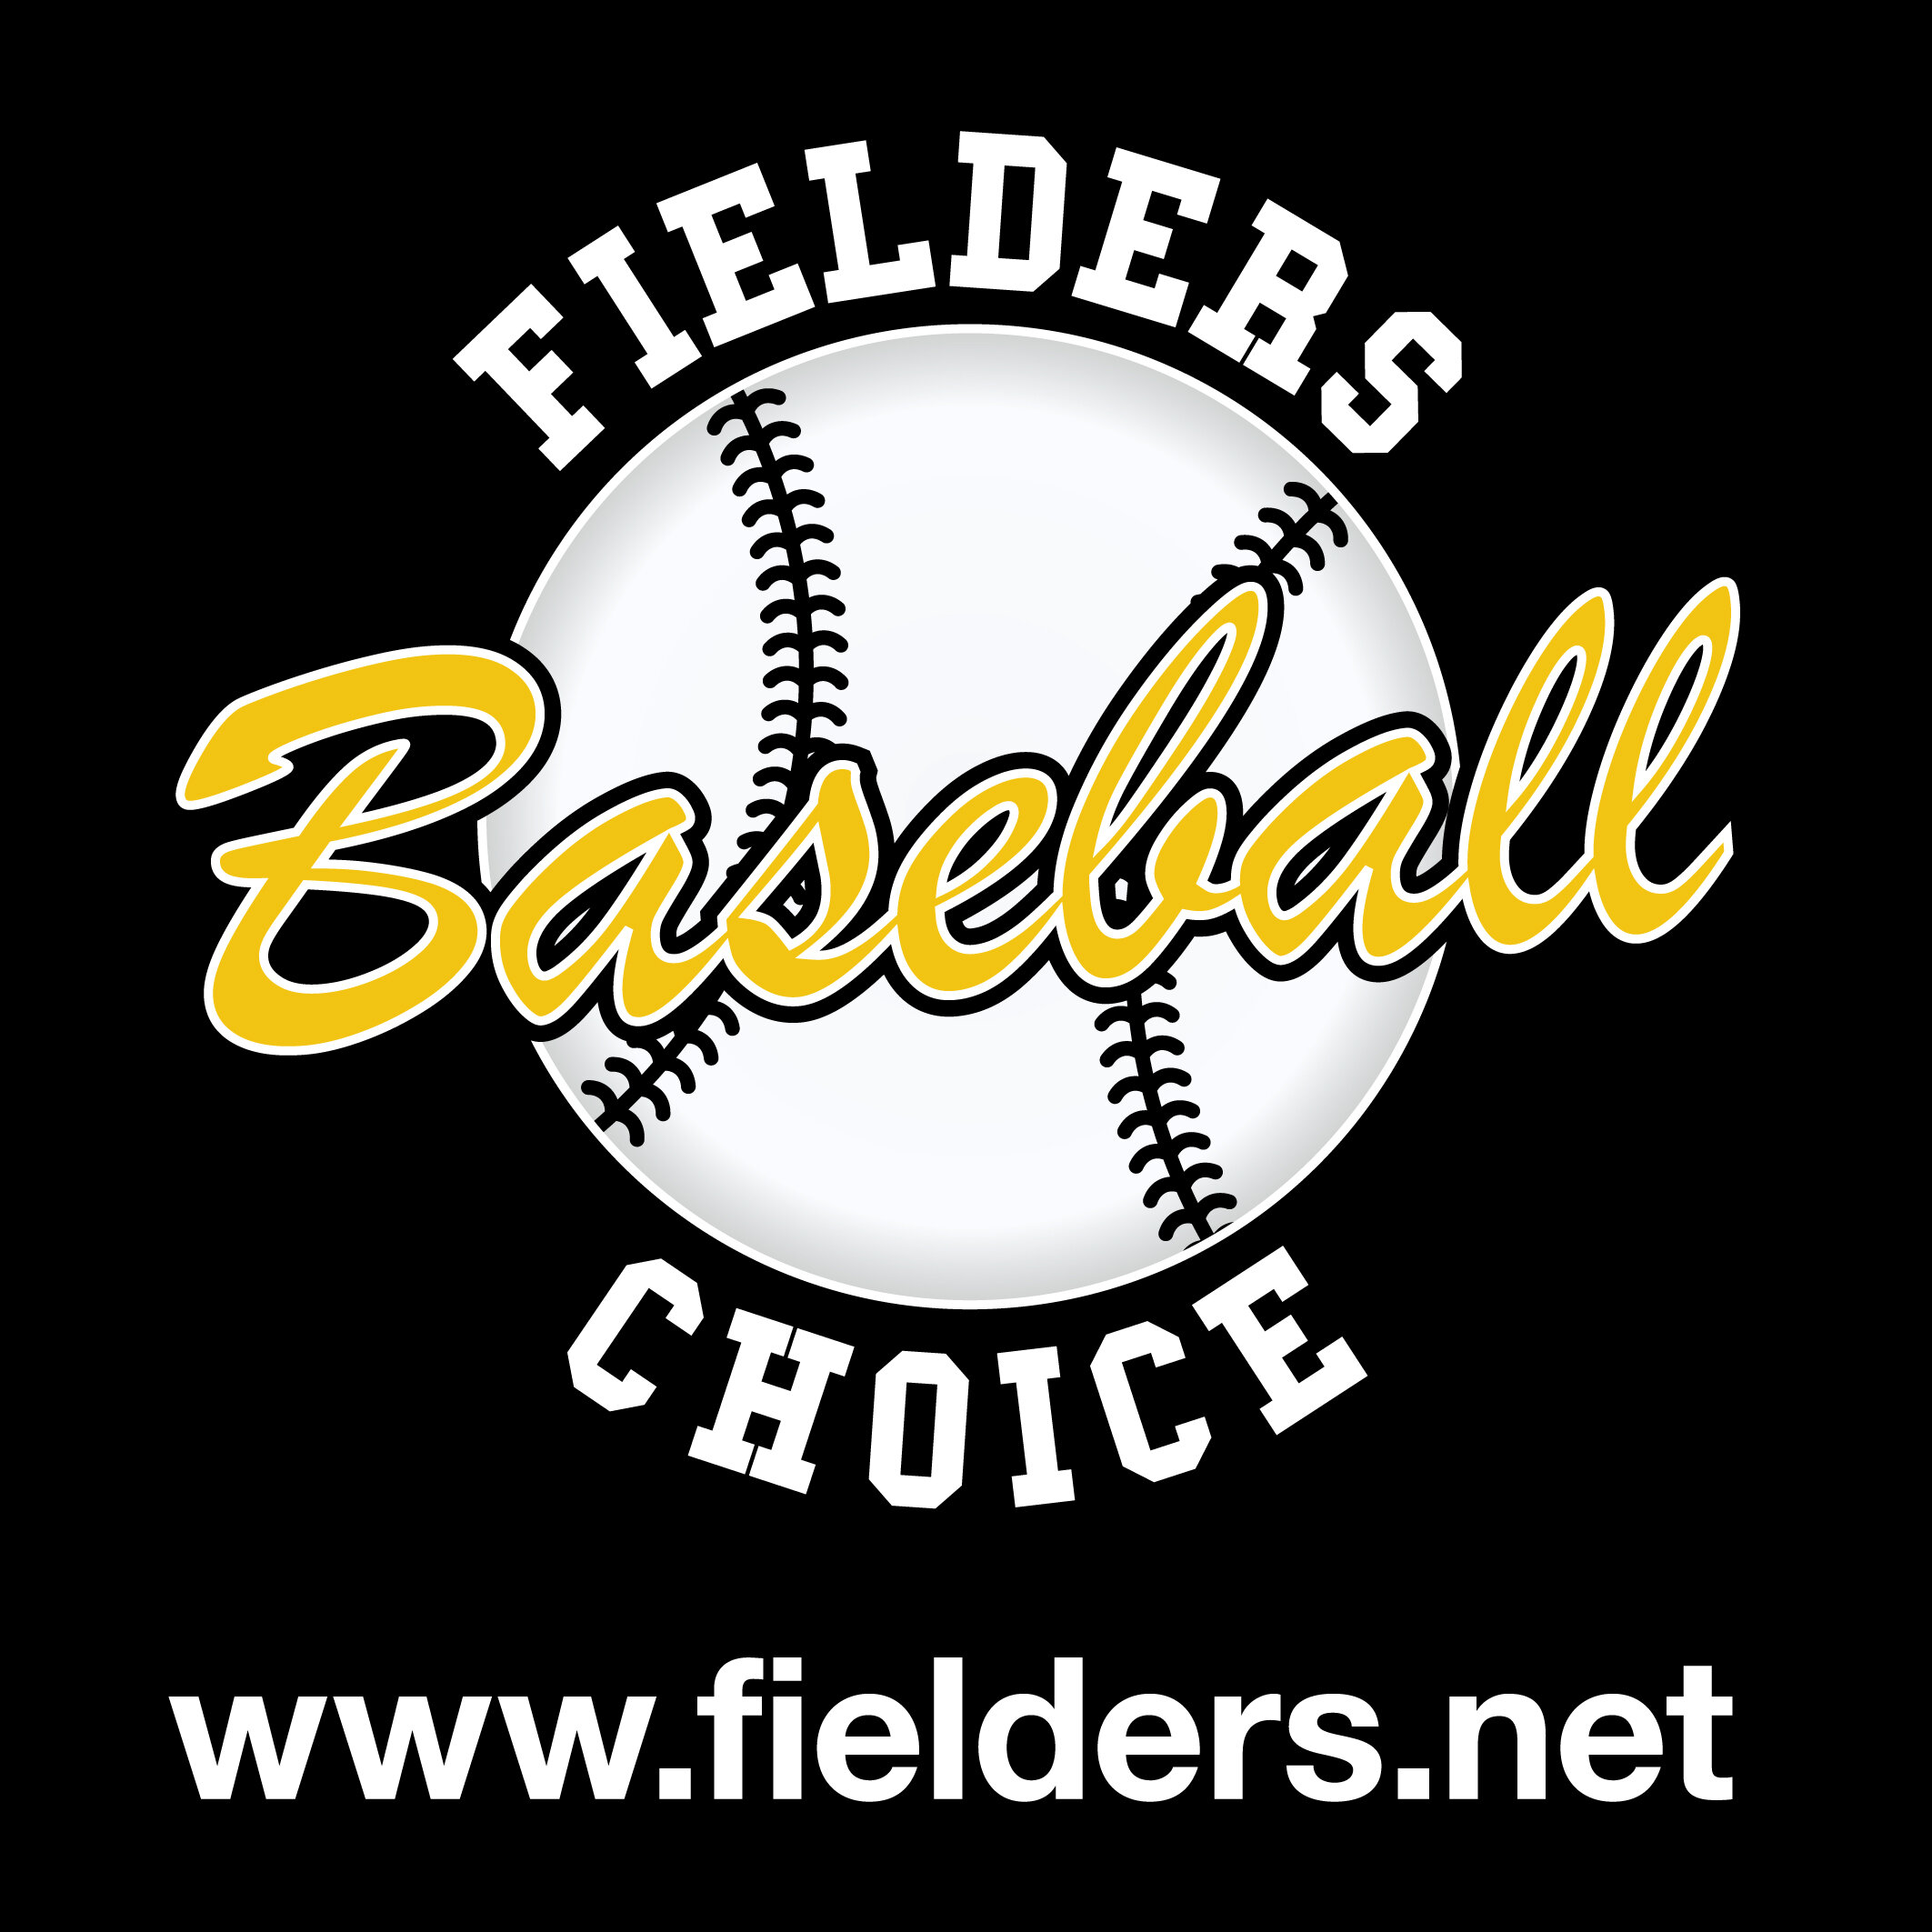 Fielders-Choice-on-blk (2).jpg